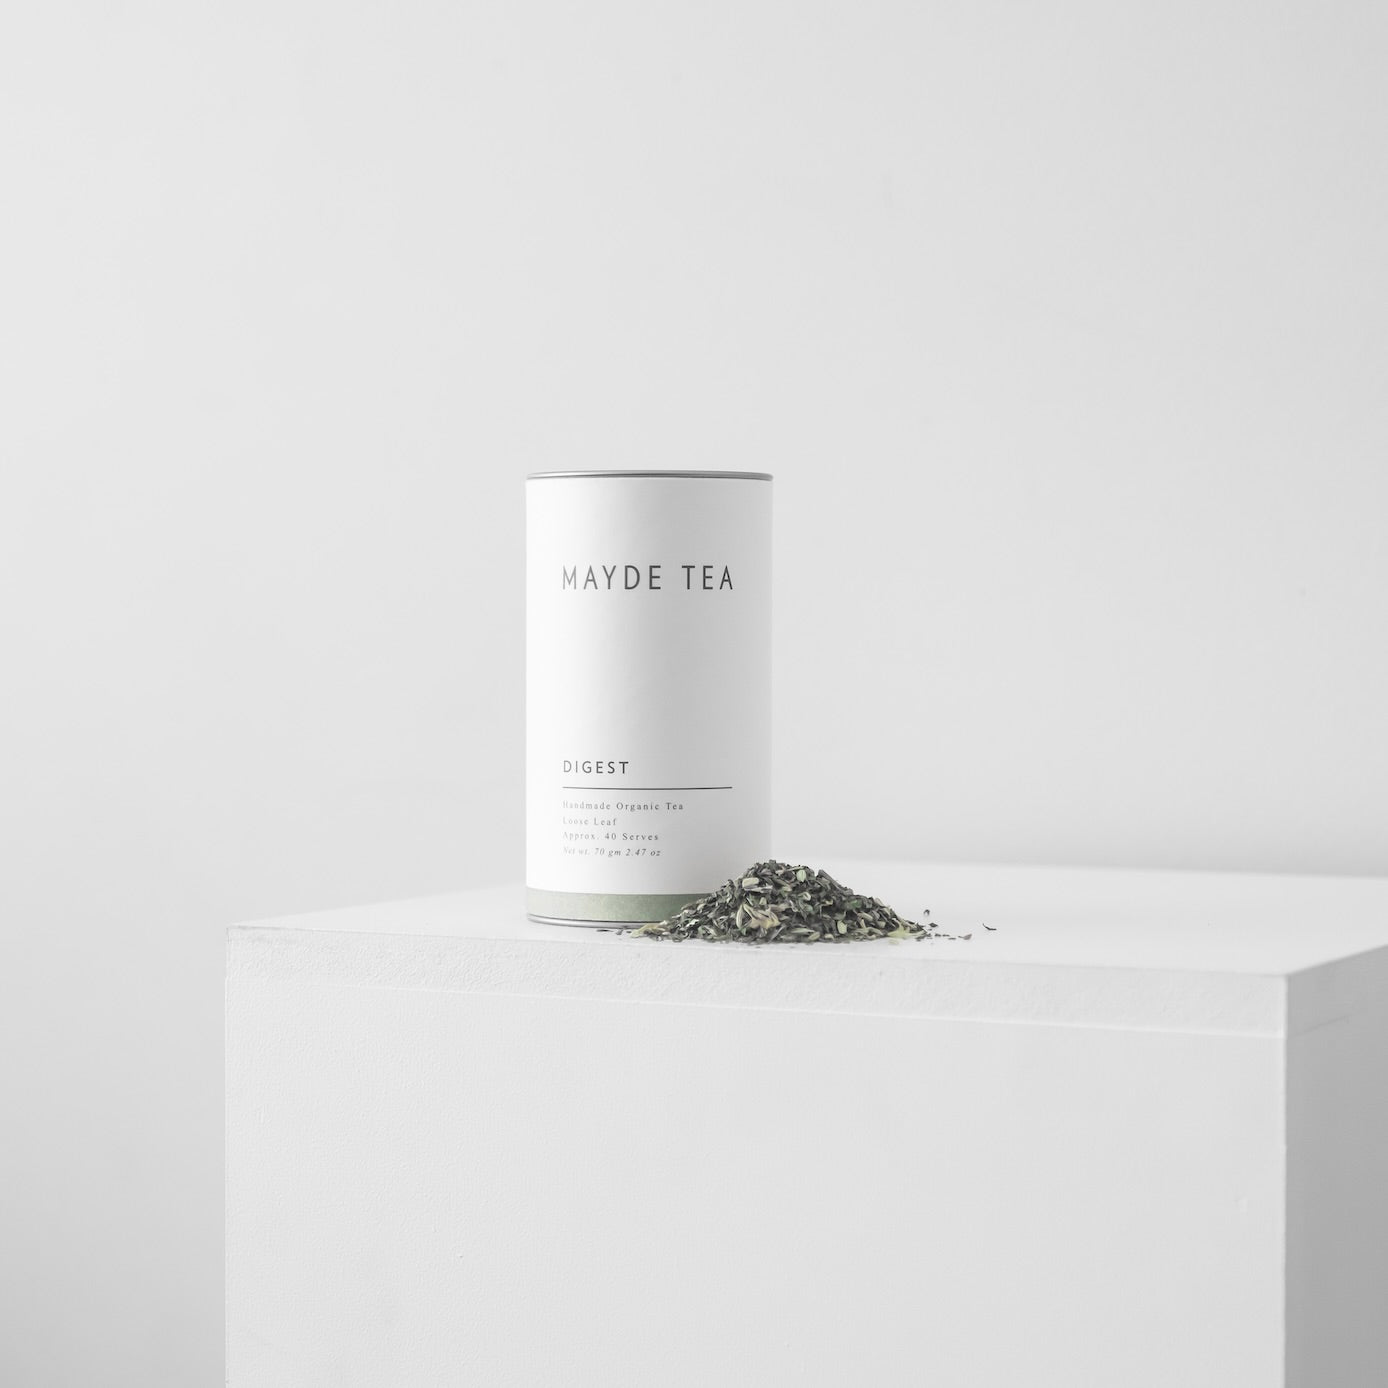 Digest - Loose Leaf Tea Herbal Teas Mayde Tea 40 serve tube  